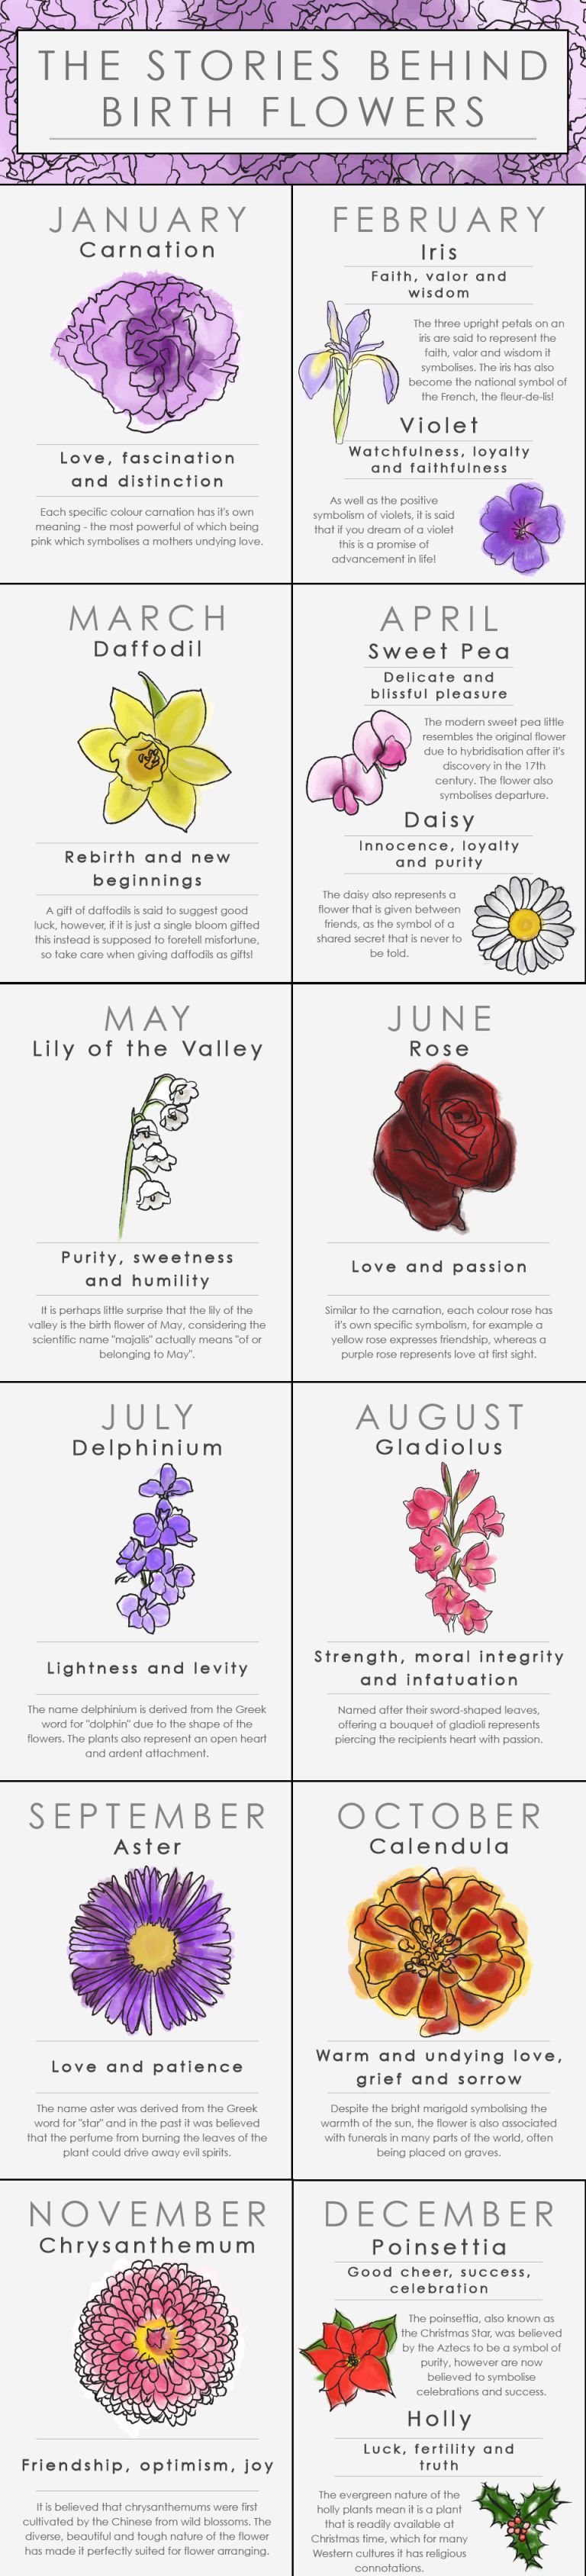 Ο μήνας που γεννηθήκατε συνδέεται με ένα λουλούδι. Βρείτε το δικό σας λουλούδι και δείτε τι σημαίνει για εσάς!